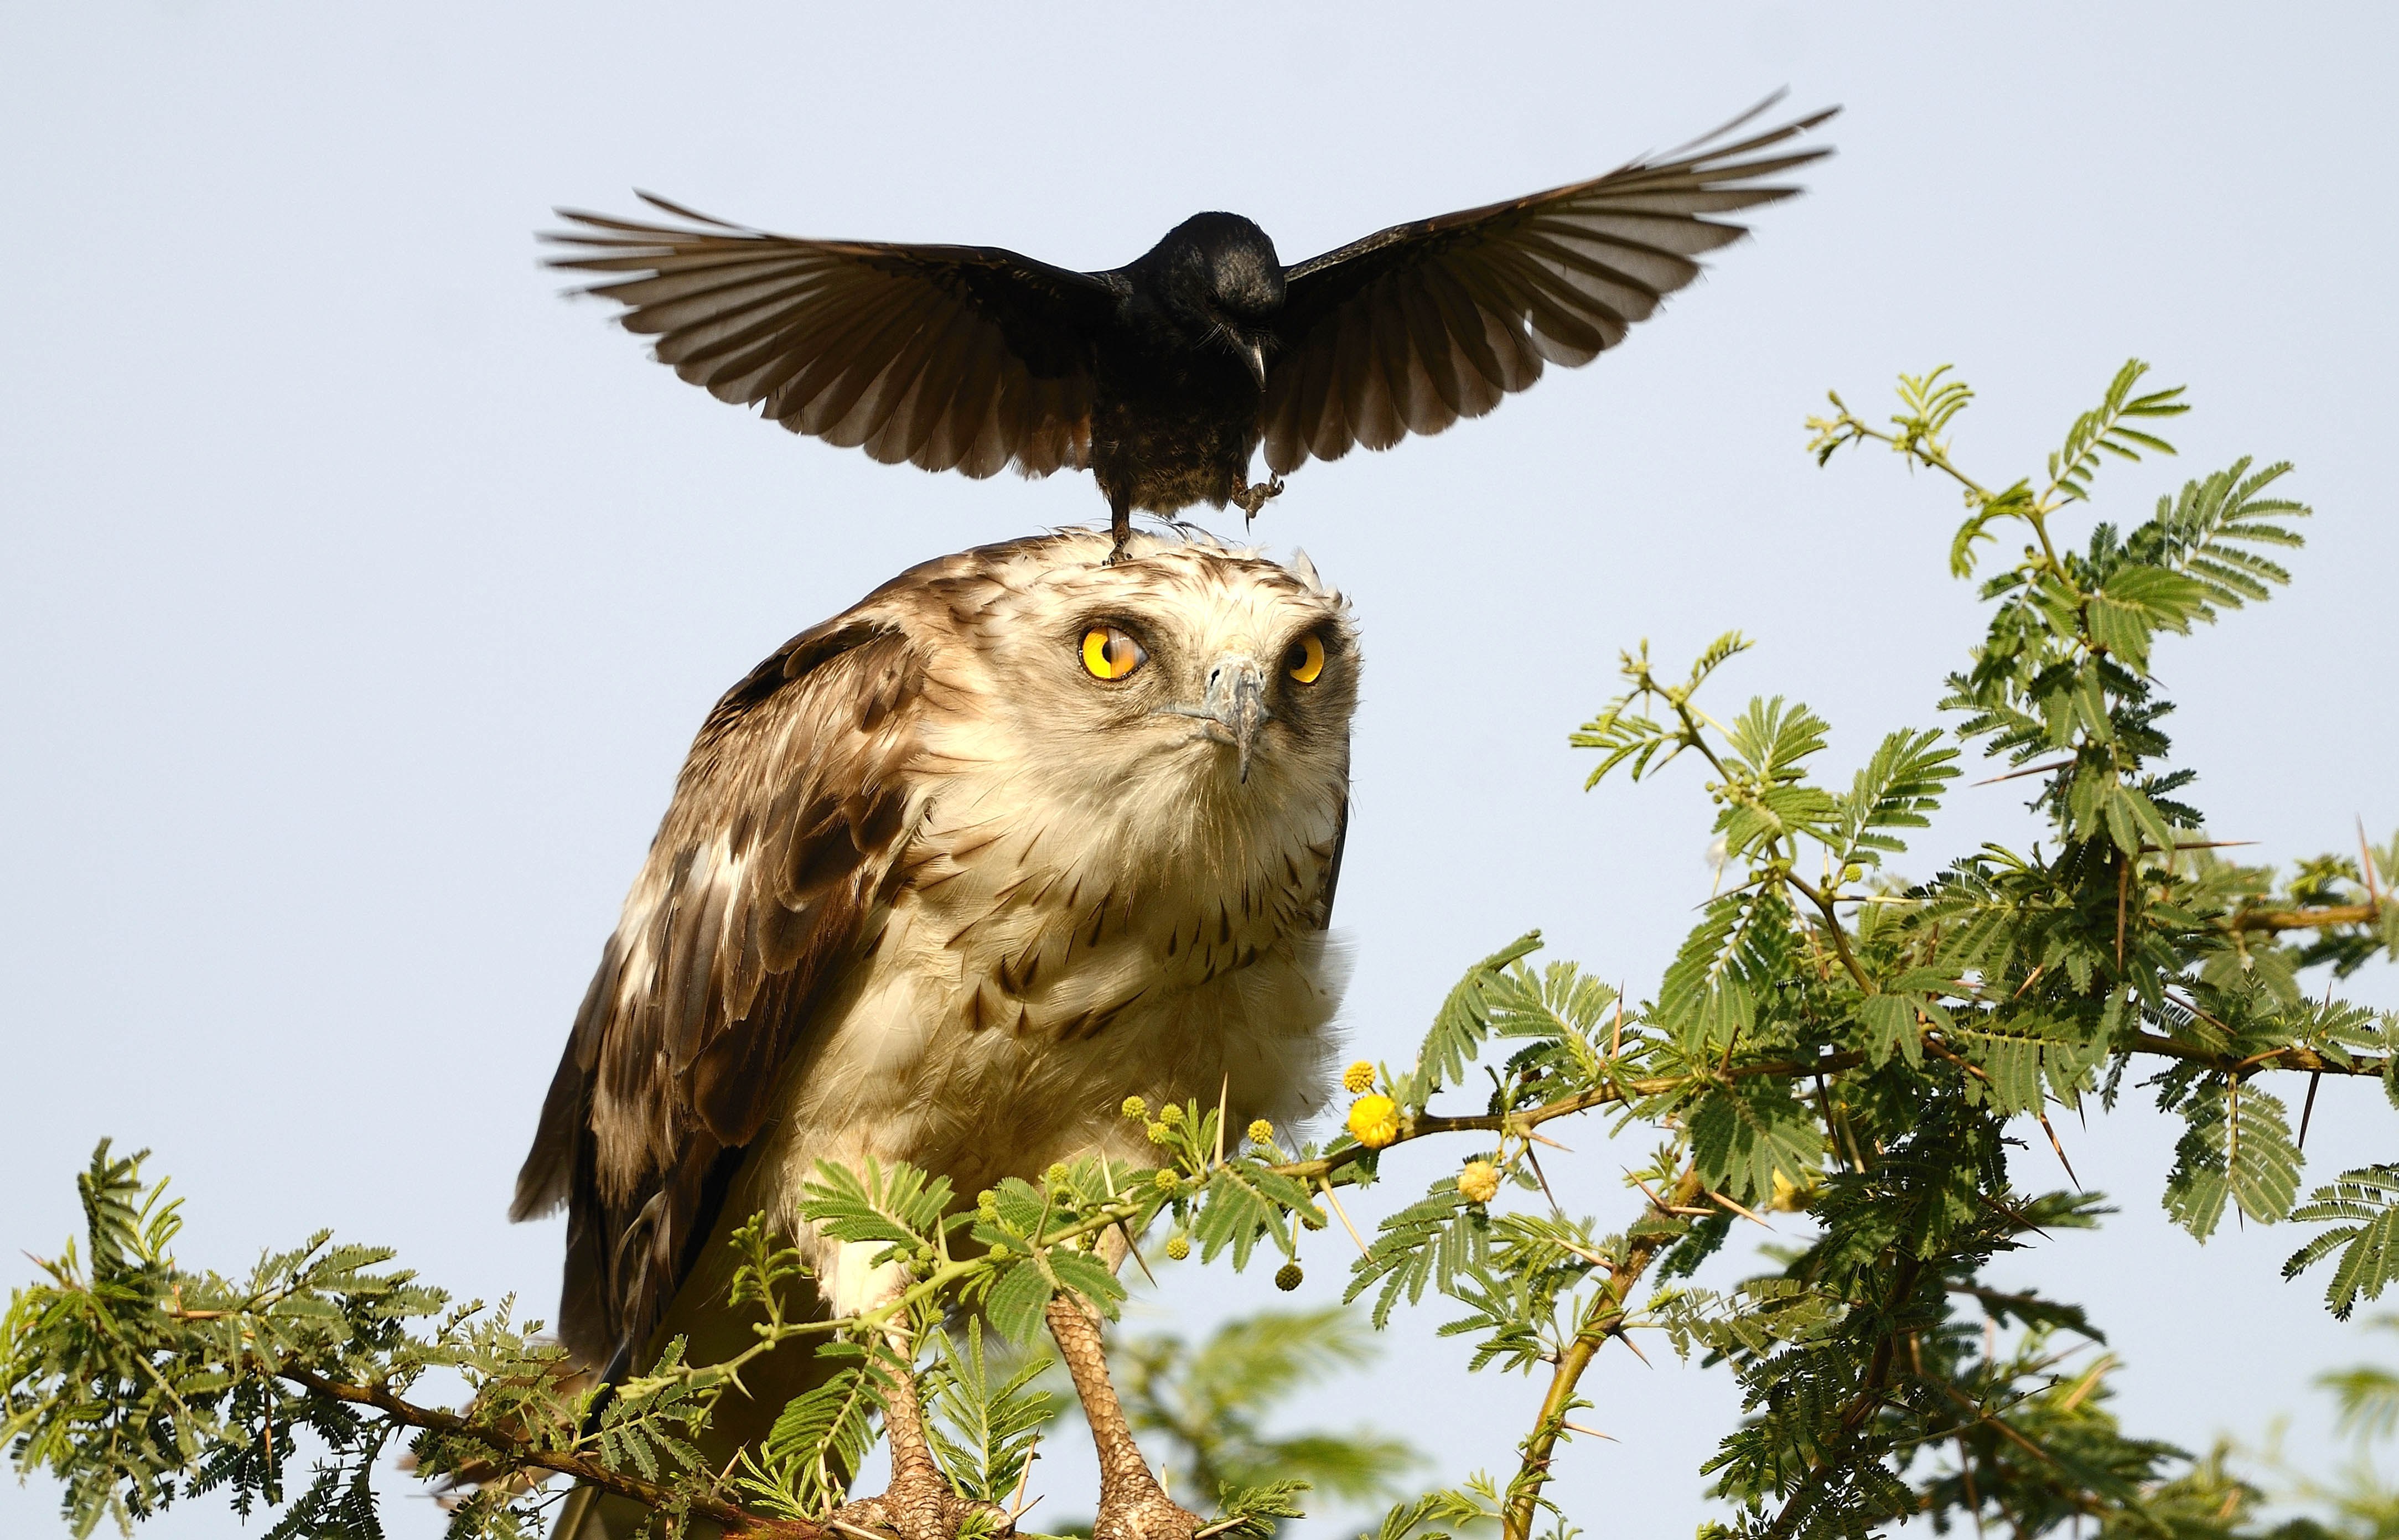 Значение хищных птиц в природе